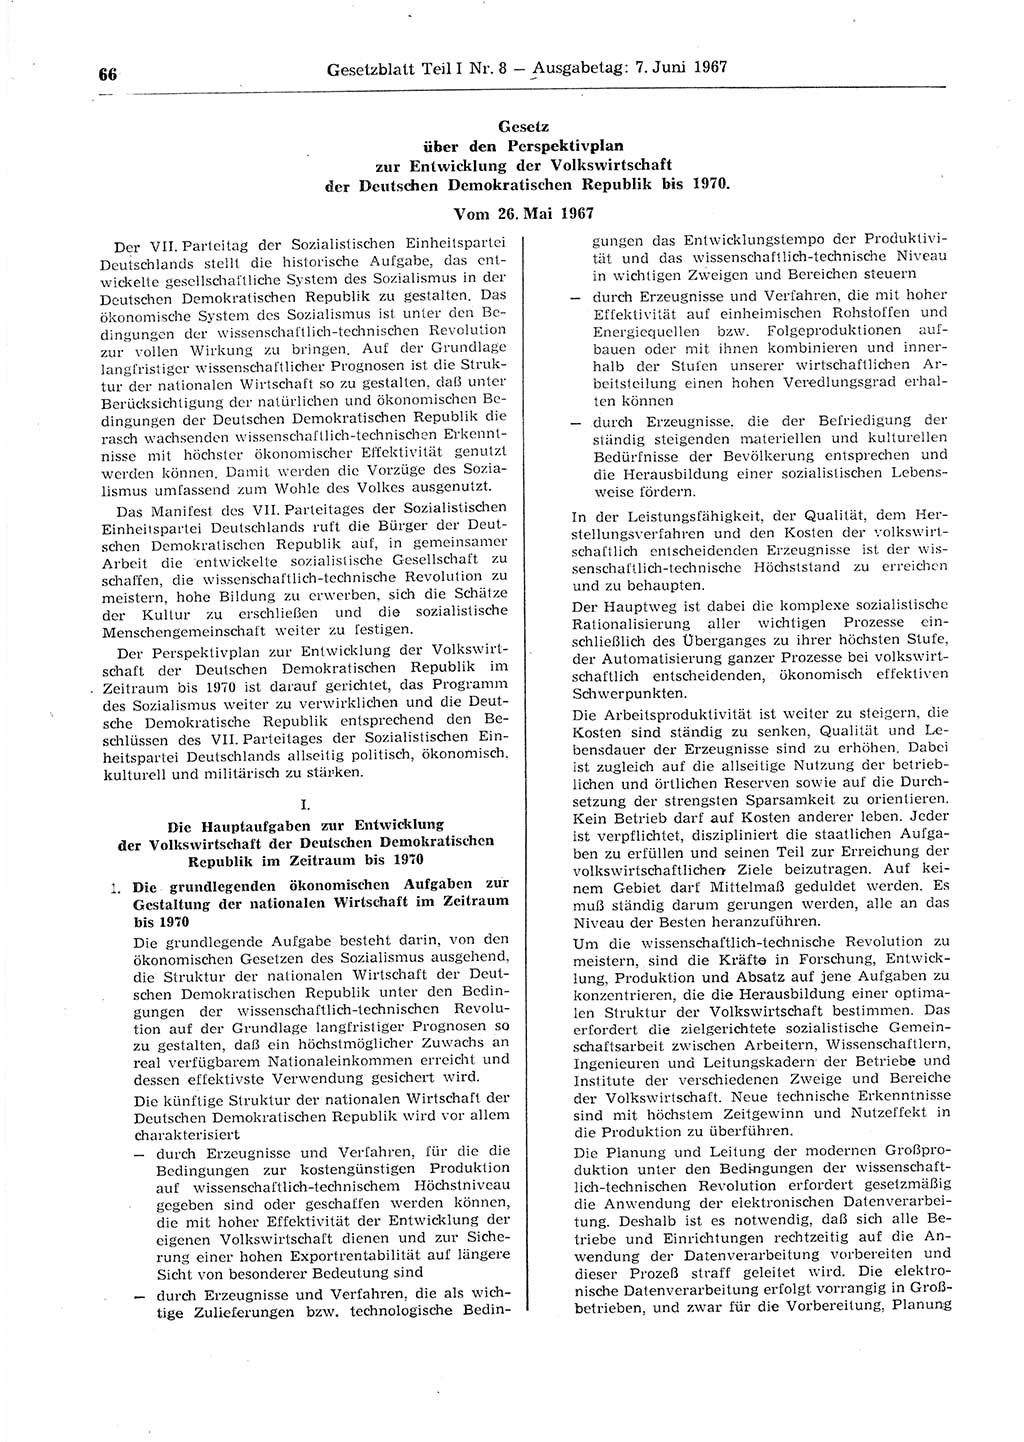 Gesetzblatt (GBl.) der Deutschen Demokratischen Republik (DDR) Teil Ⅰ 1967, Seite 66 (GBl. DDR Ⅰ 1967, S. 66)